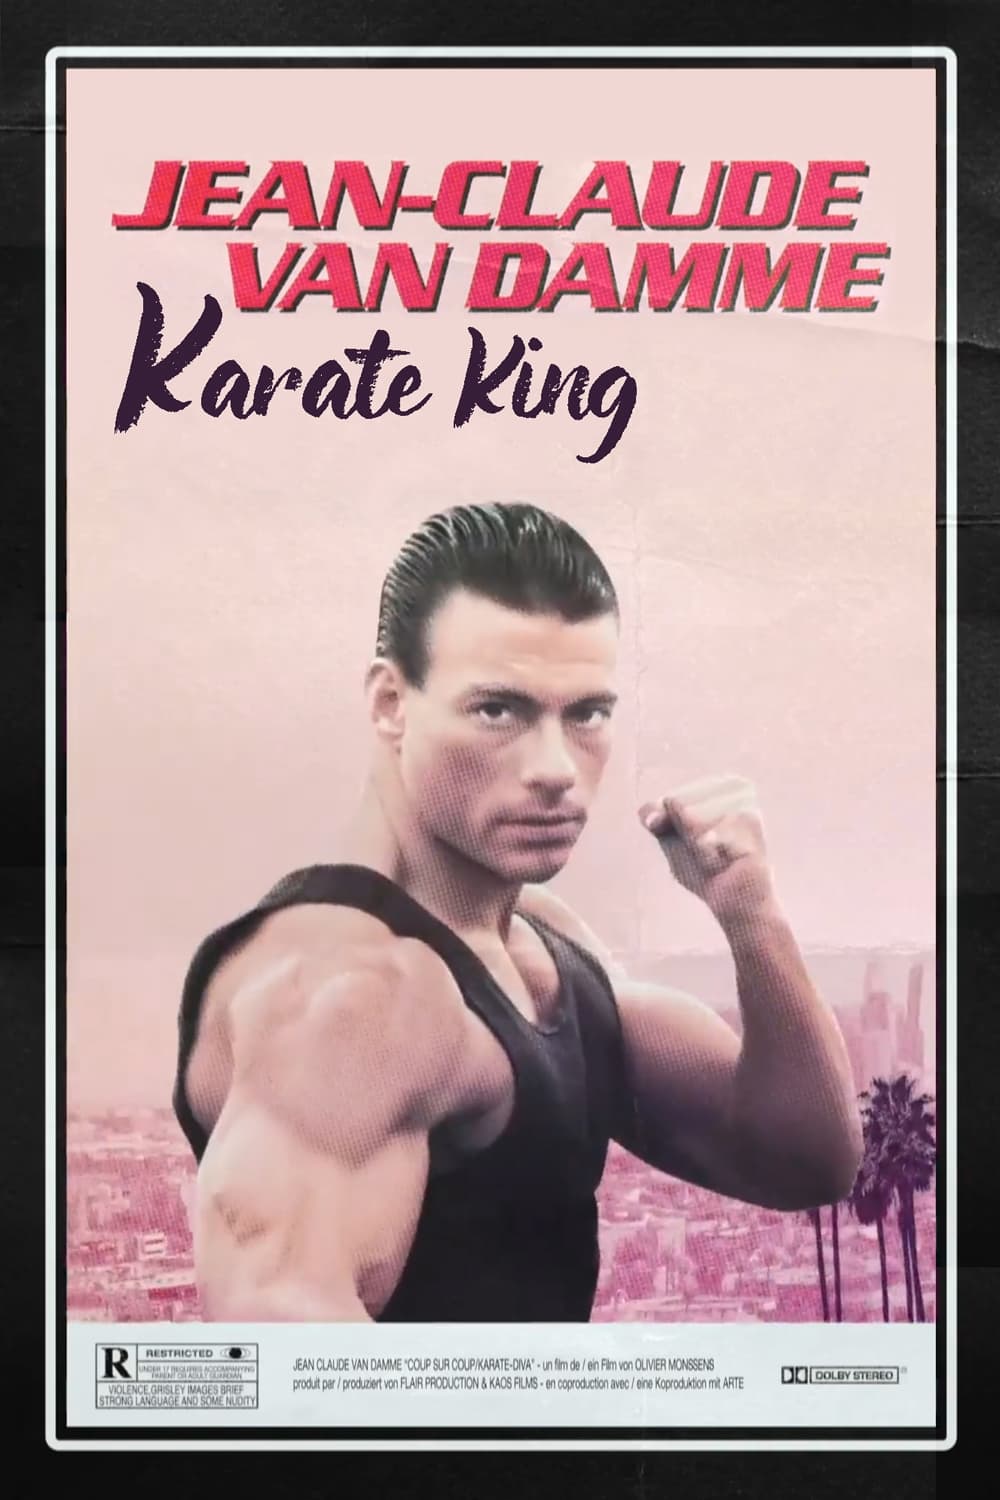 Jean-Claude Van Damme: Karate-Diva